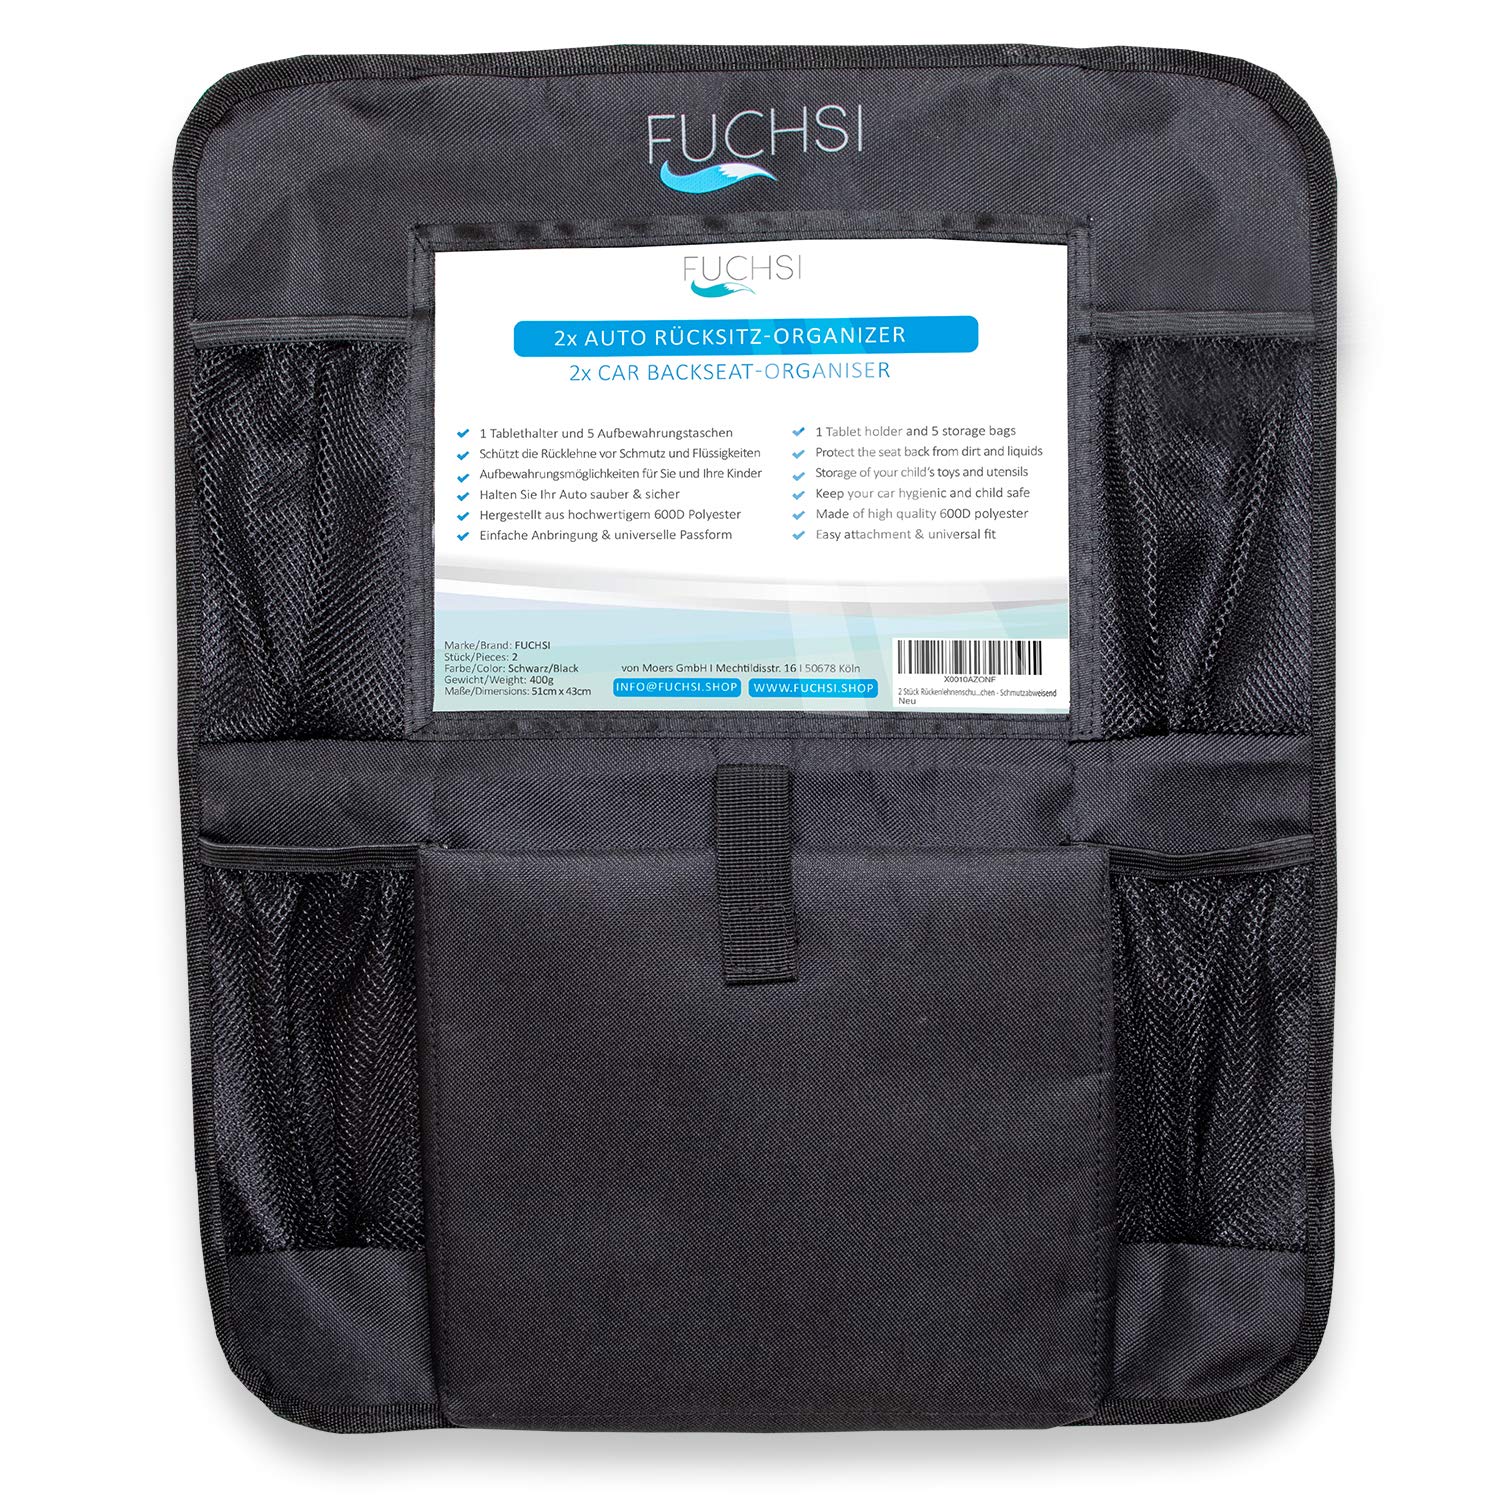 Auto-Rückenlehnenschutz, 2 Stück Auto-Rücksitz-Organizer für Kinder, Große  Taschen und iPad / Tablet-Fach, wasserdichter Autositz-Protektor, Ki